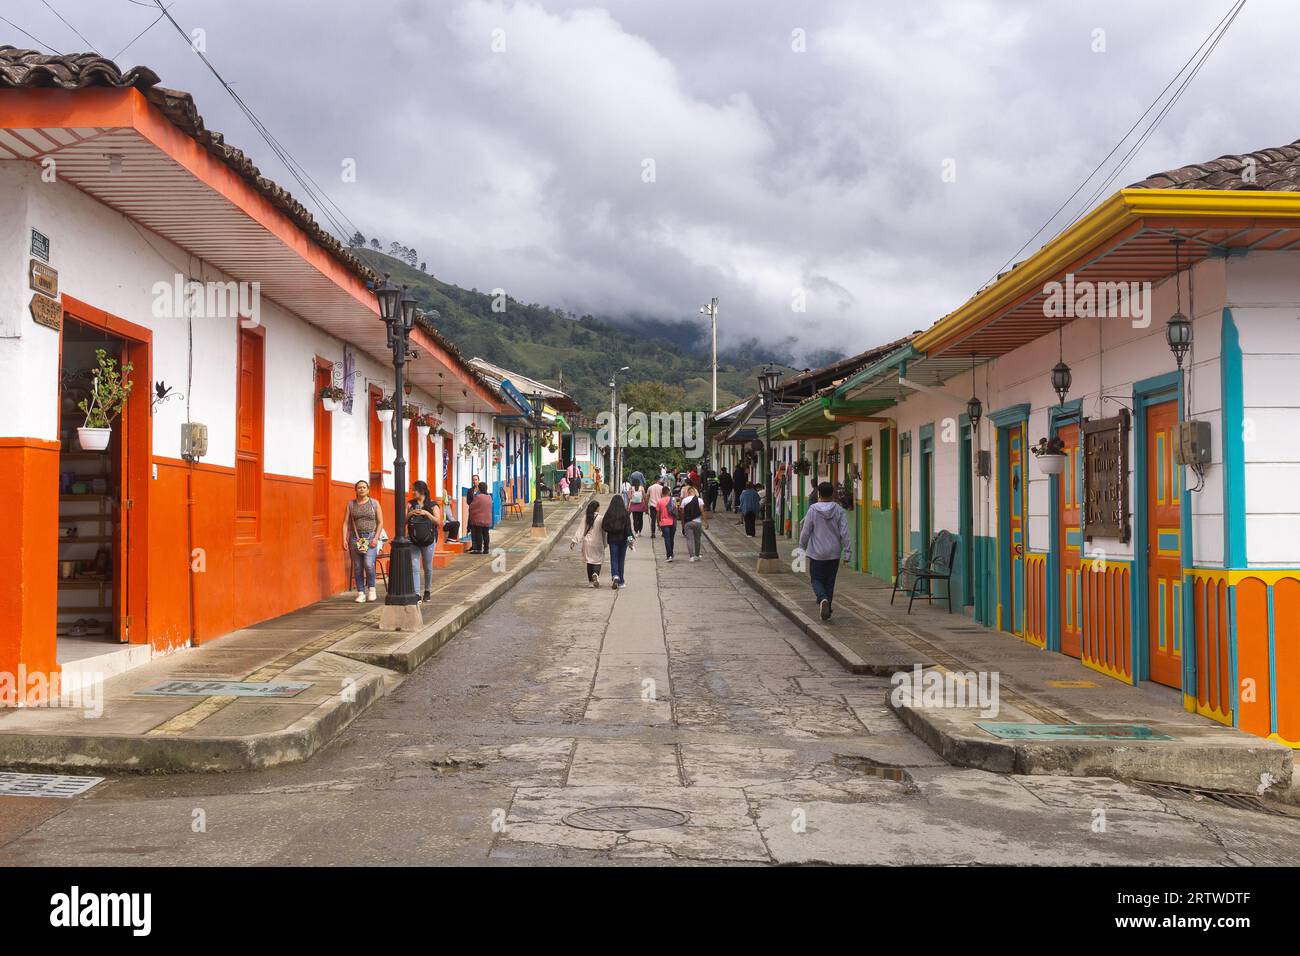 Rue dans le village de Salento (Quindio) avec des bâtiments coloniaux colorés, Colombie. Banque D'Images